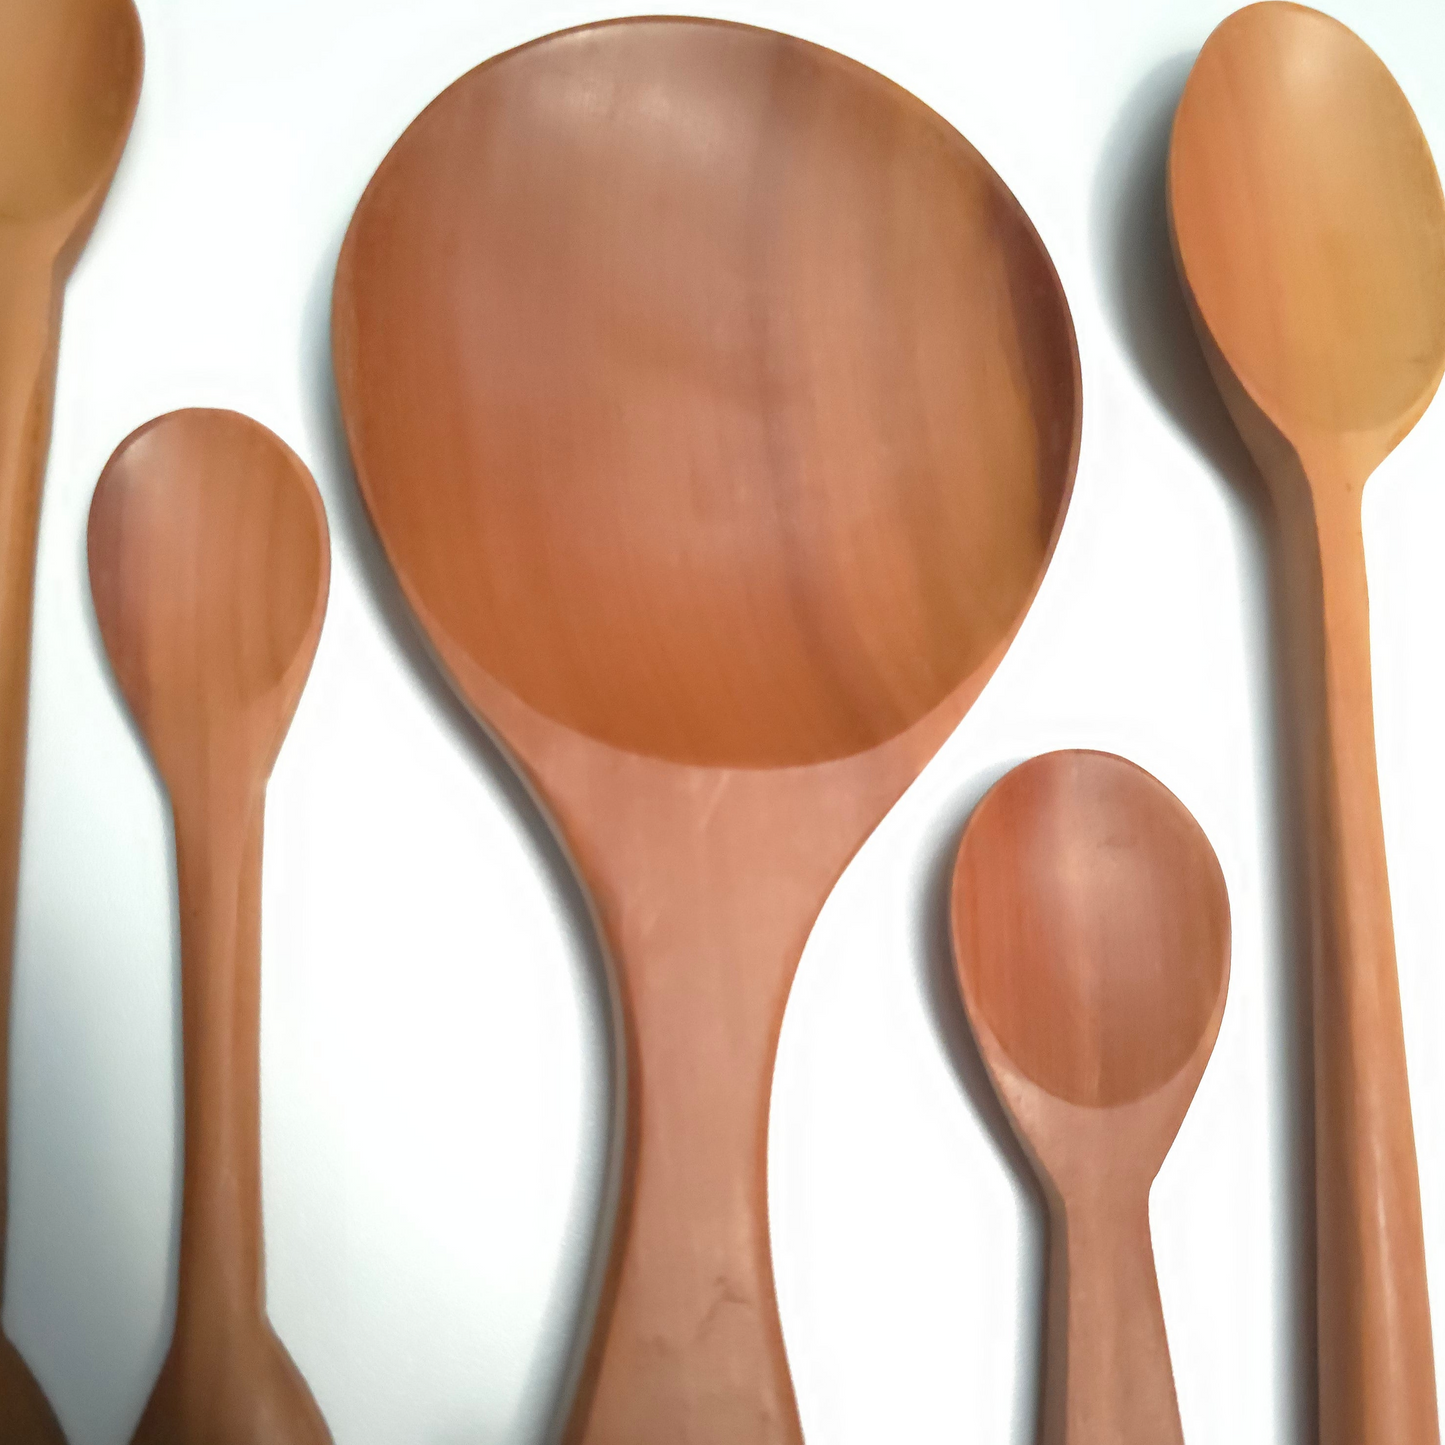 Wooden Teak Spoons Set of 9pcs